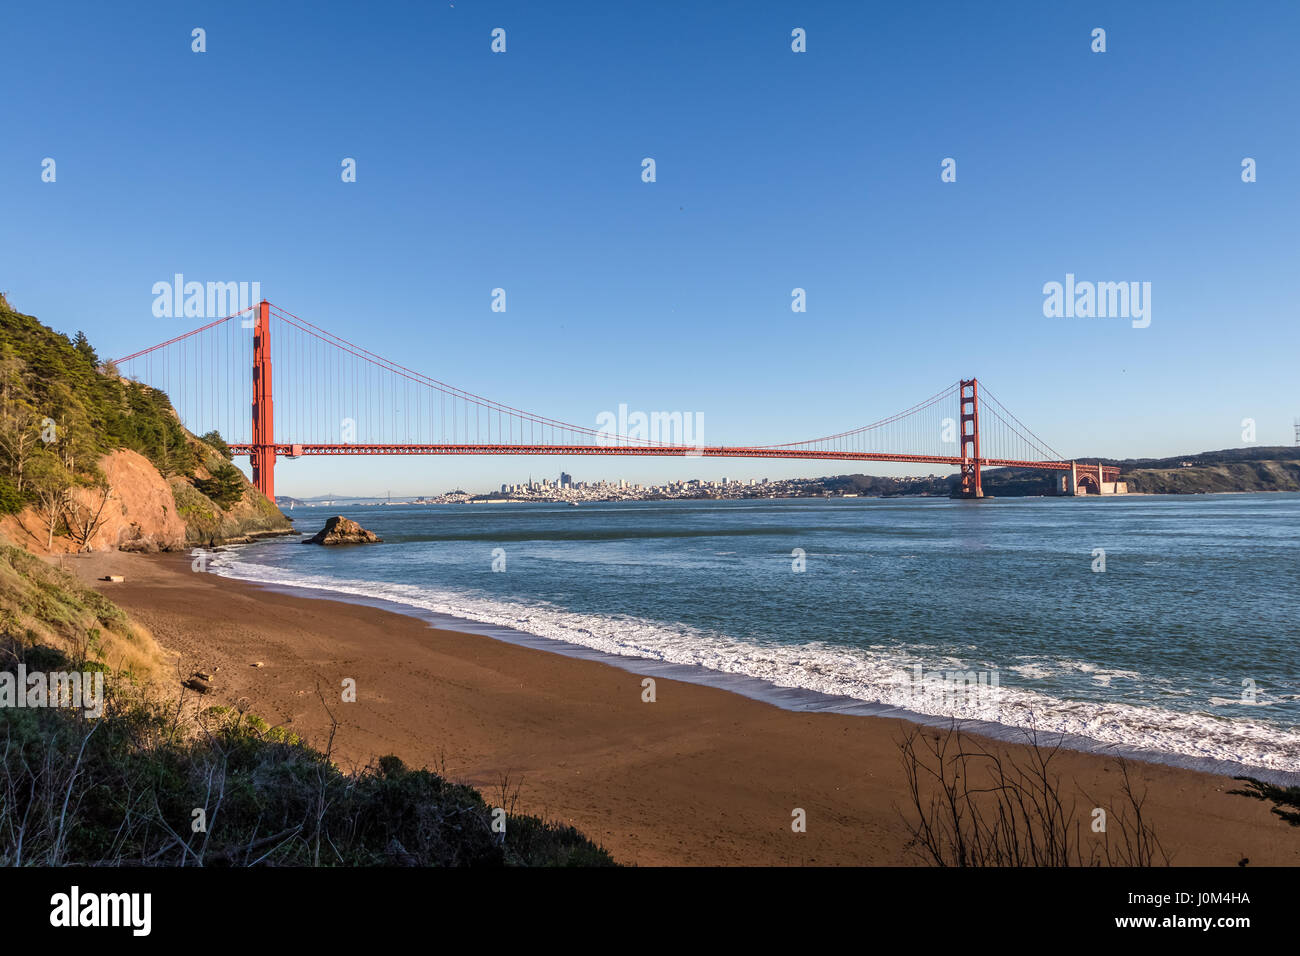 Strand-Blick auf Golden Gate Bridge und Stadt Skyline - San Francisco, Kalifornien, USA Stockfoto